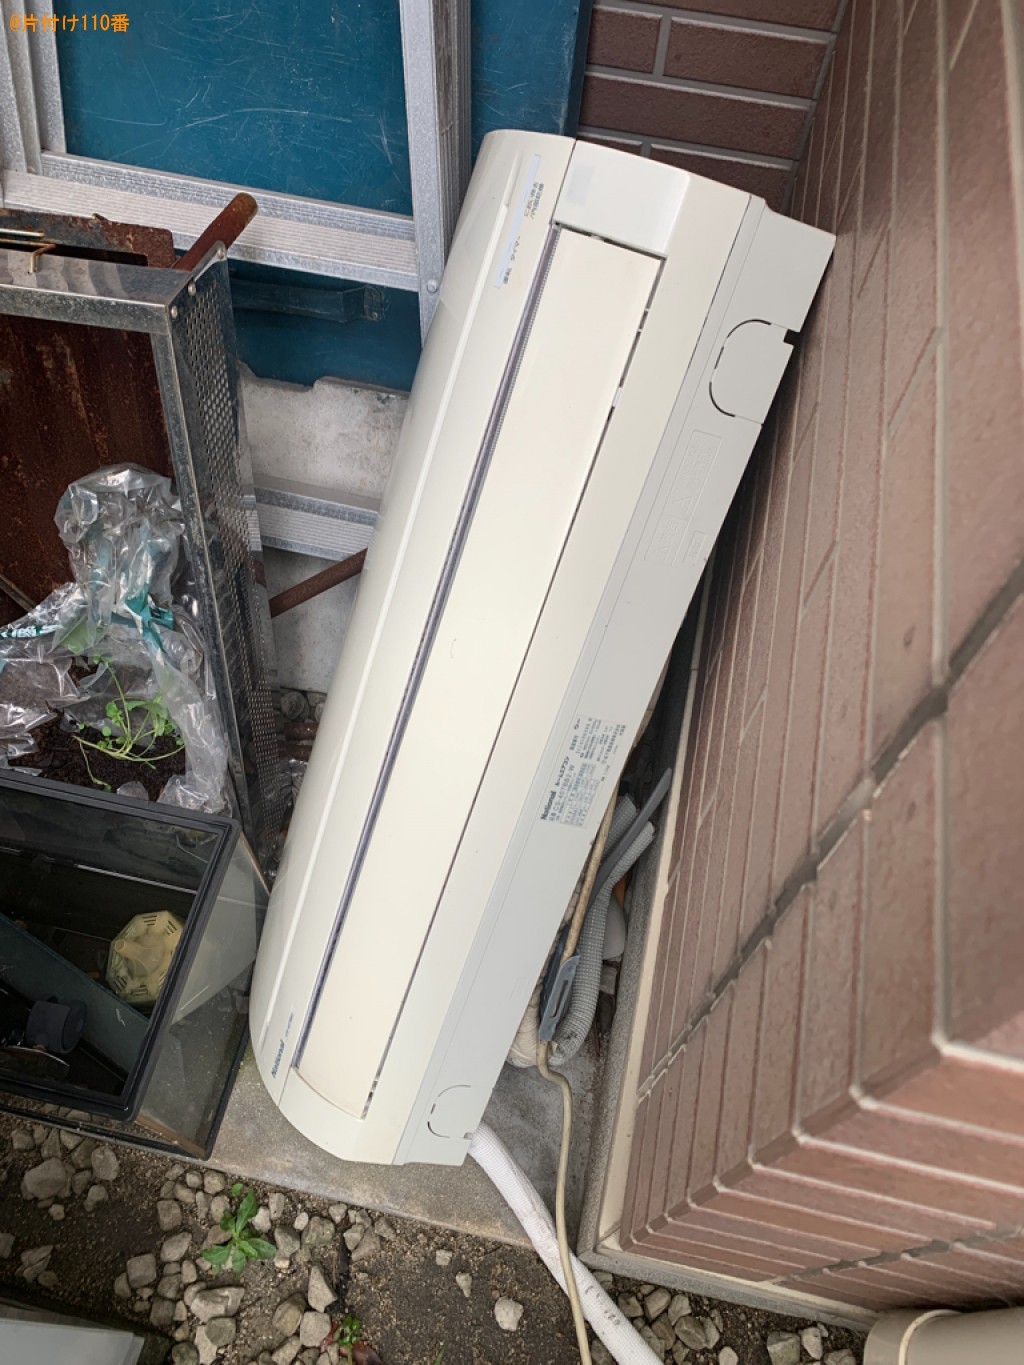 【福岡市東区】マッサージチェア、エアコンの回収・処分ご依頼